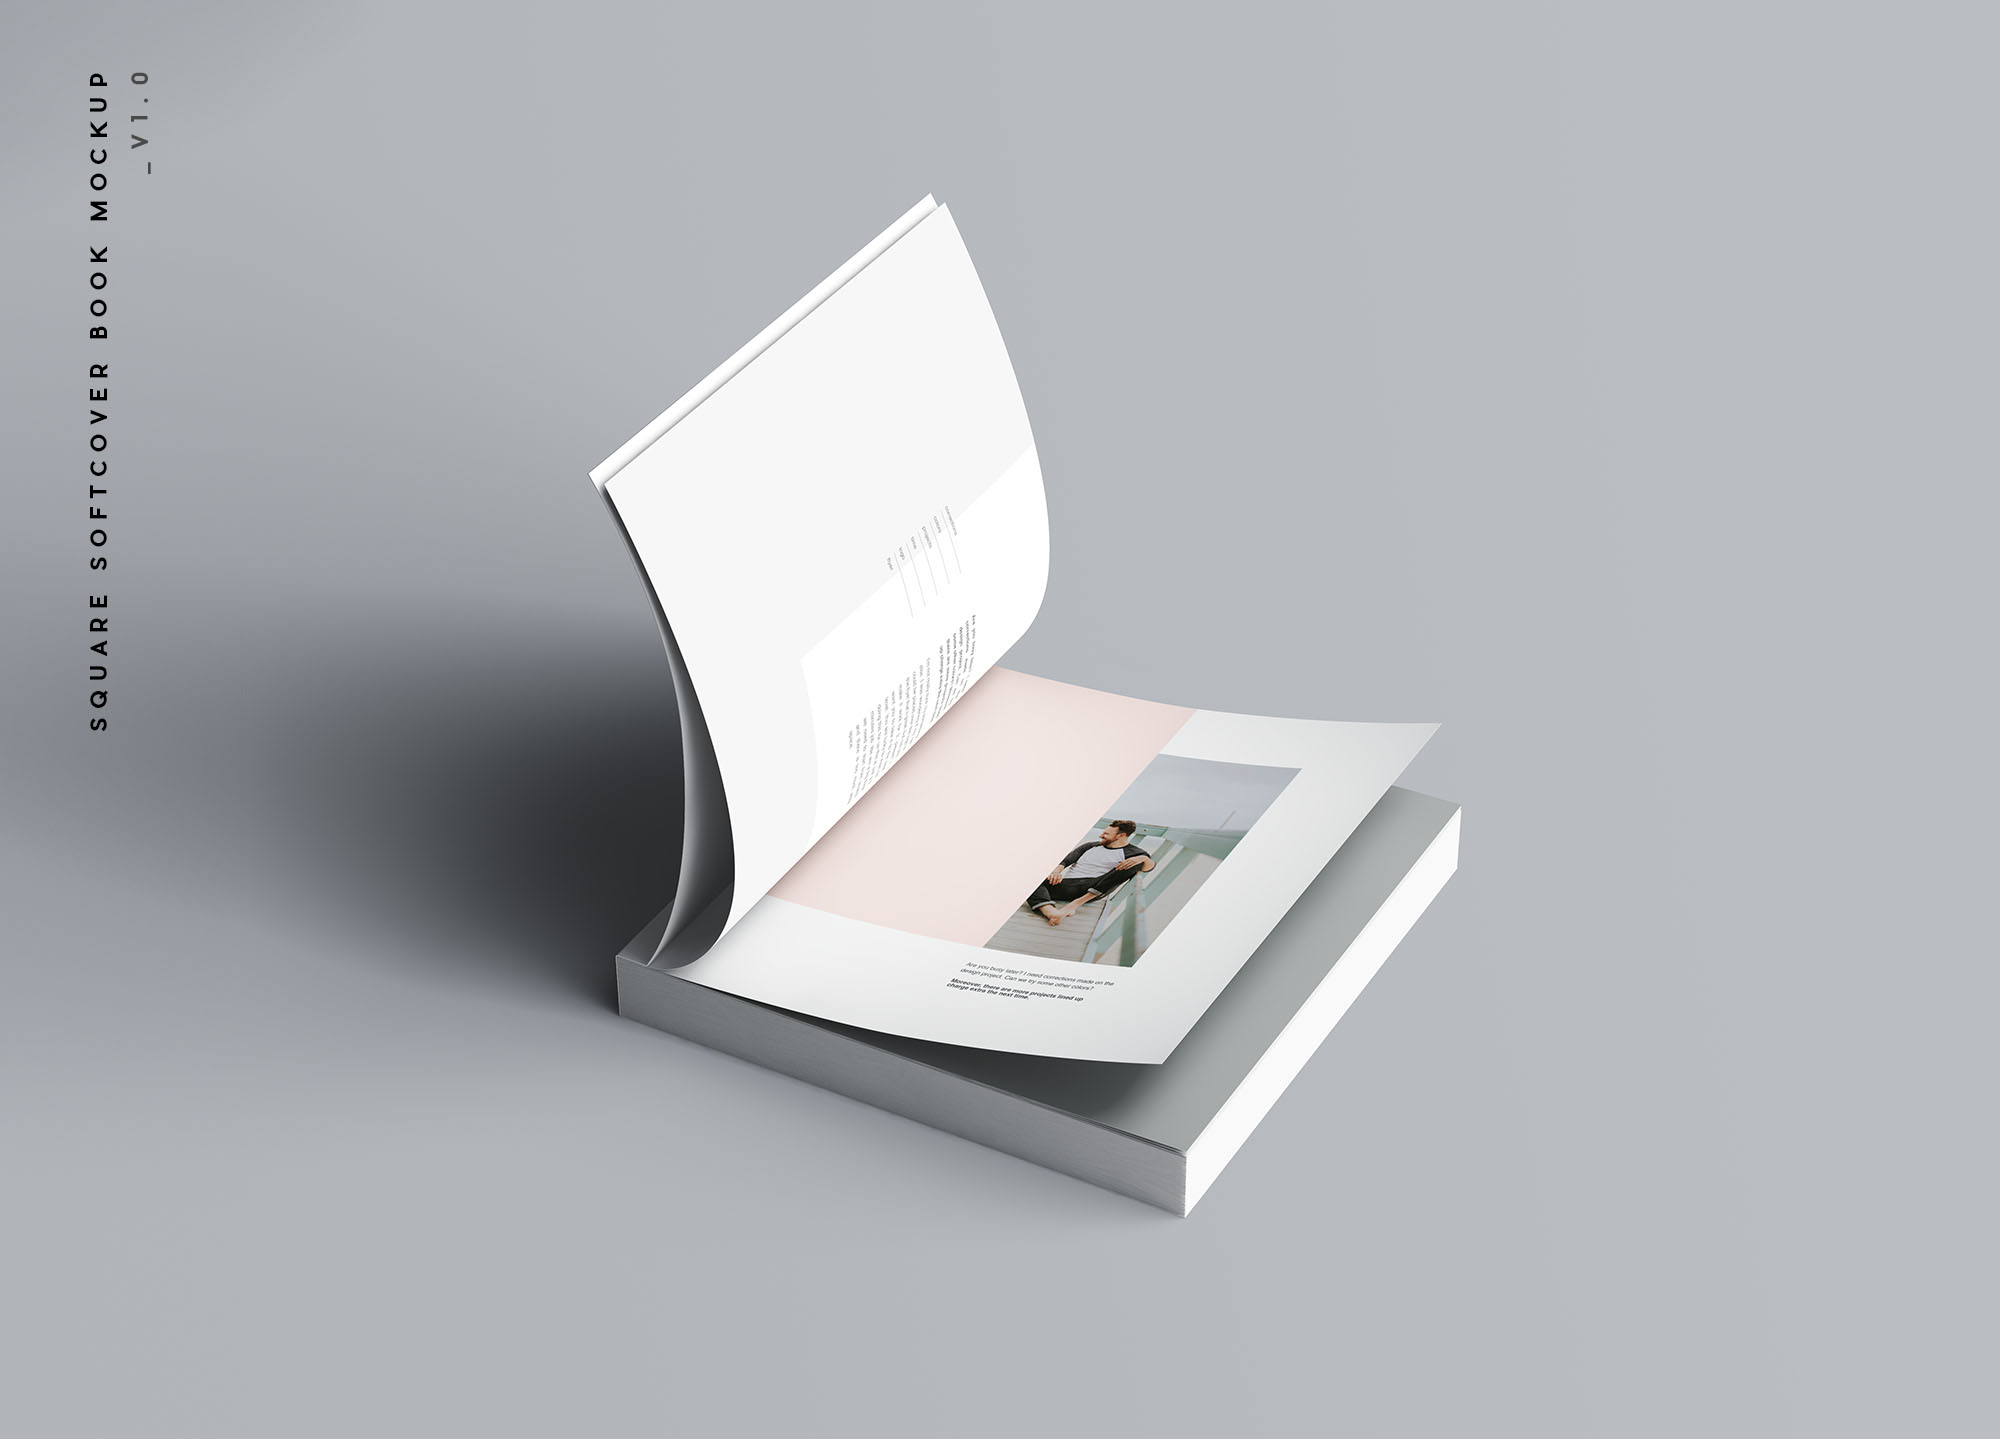 方形软封图书内页版式设计效果图样机第一素材精选 Square Softcover Book Mockup插图